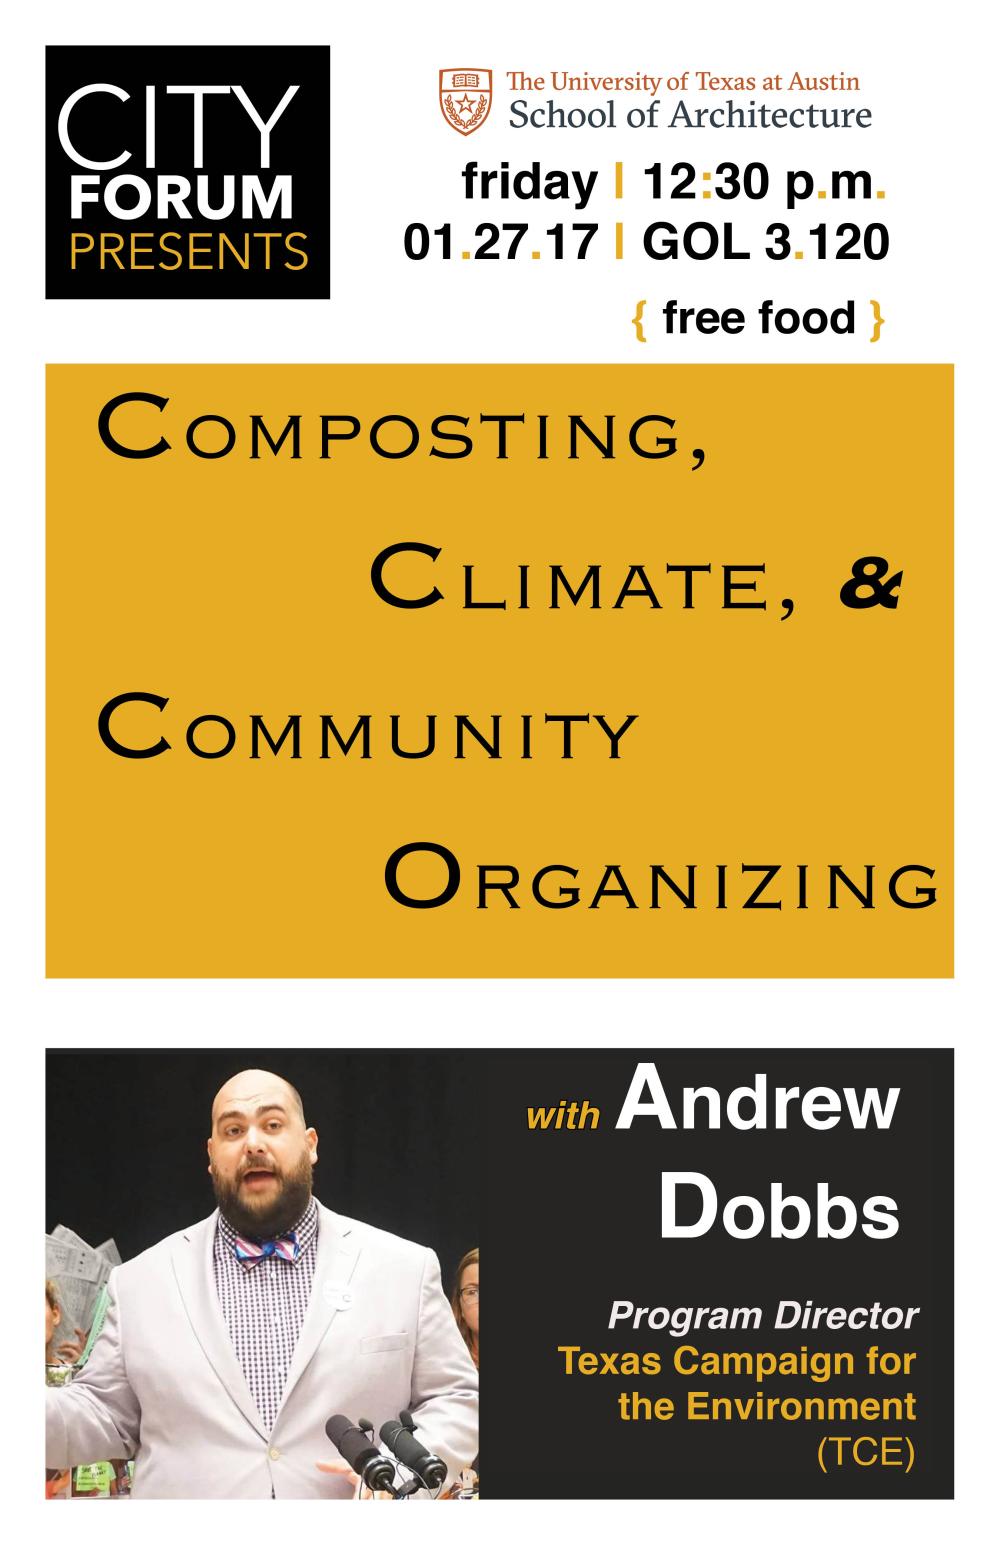 Andrew Dobbs